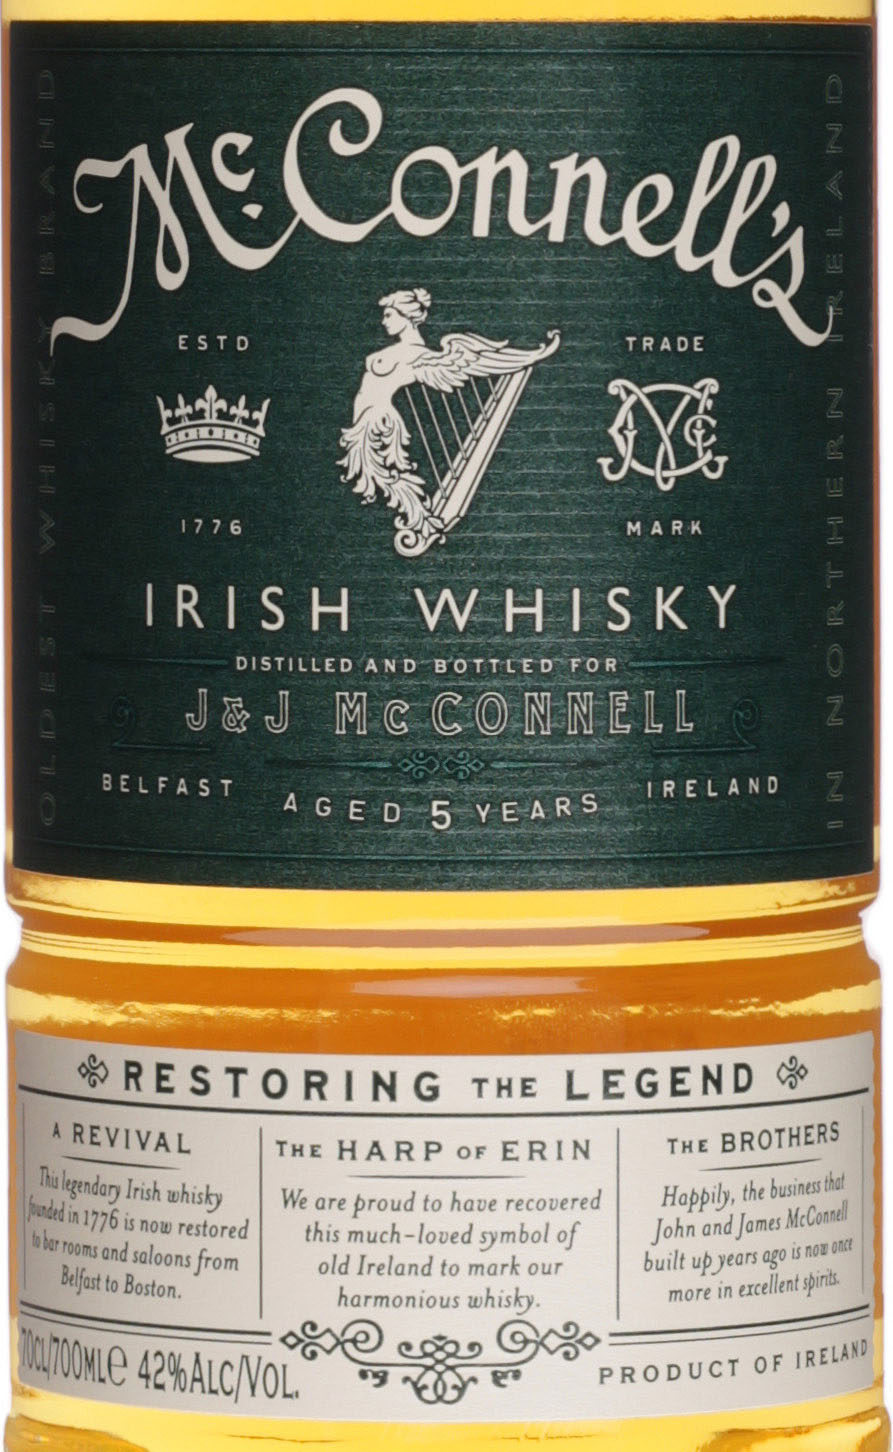 McConnell's Irish Whisky günstig und schnell bei uns im